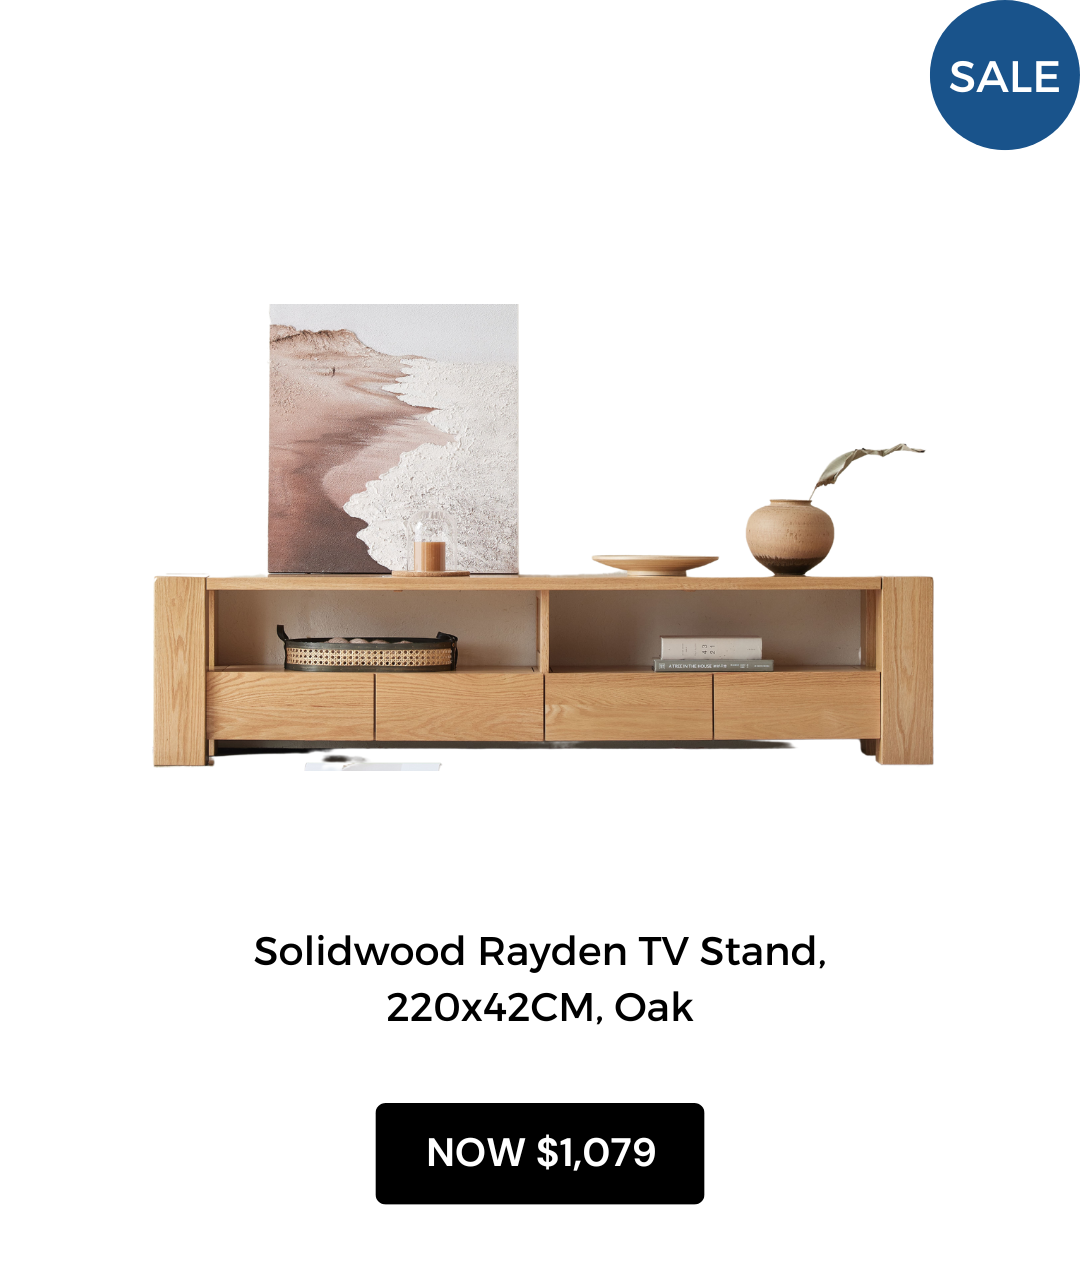 Solidwood Rayden TV Stand, 220x42CM, Oak